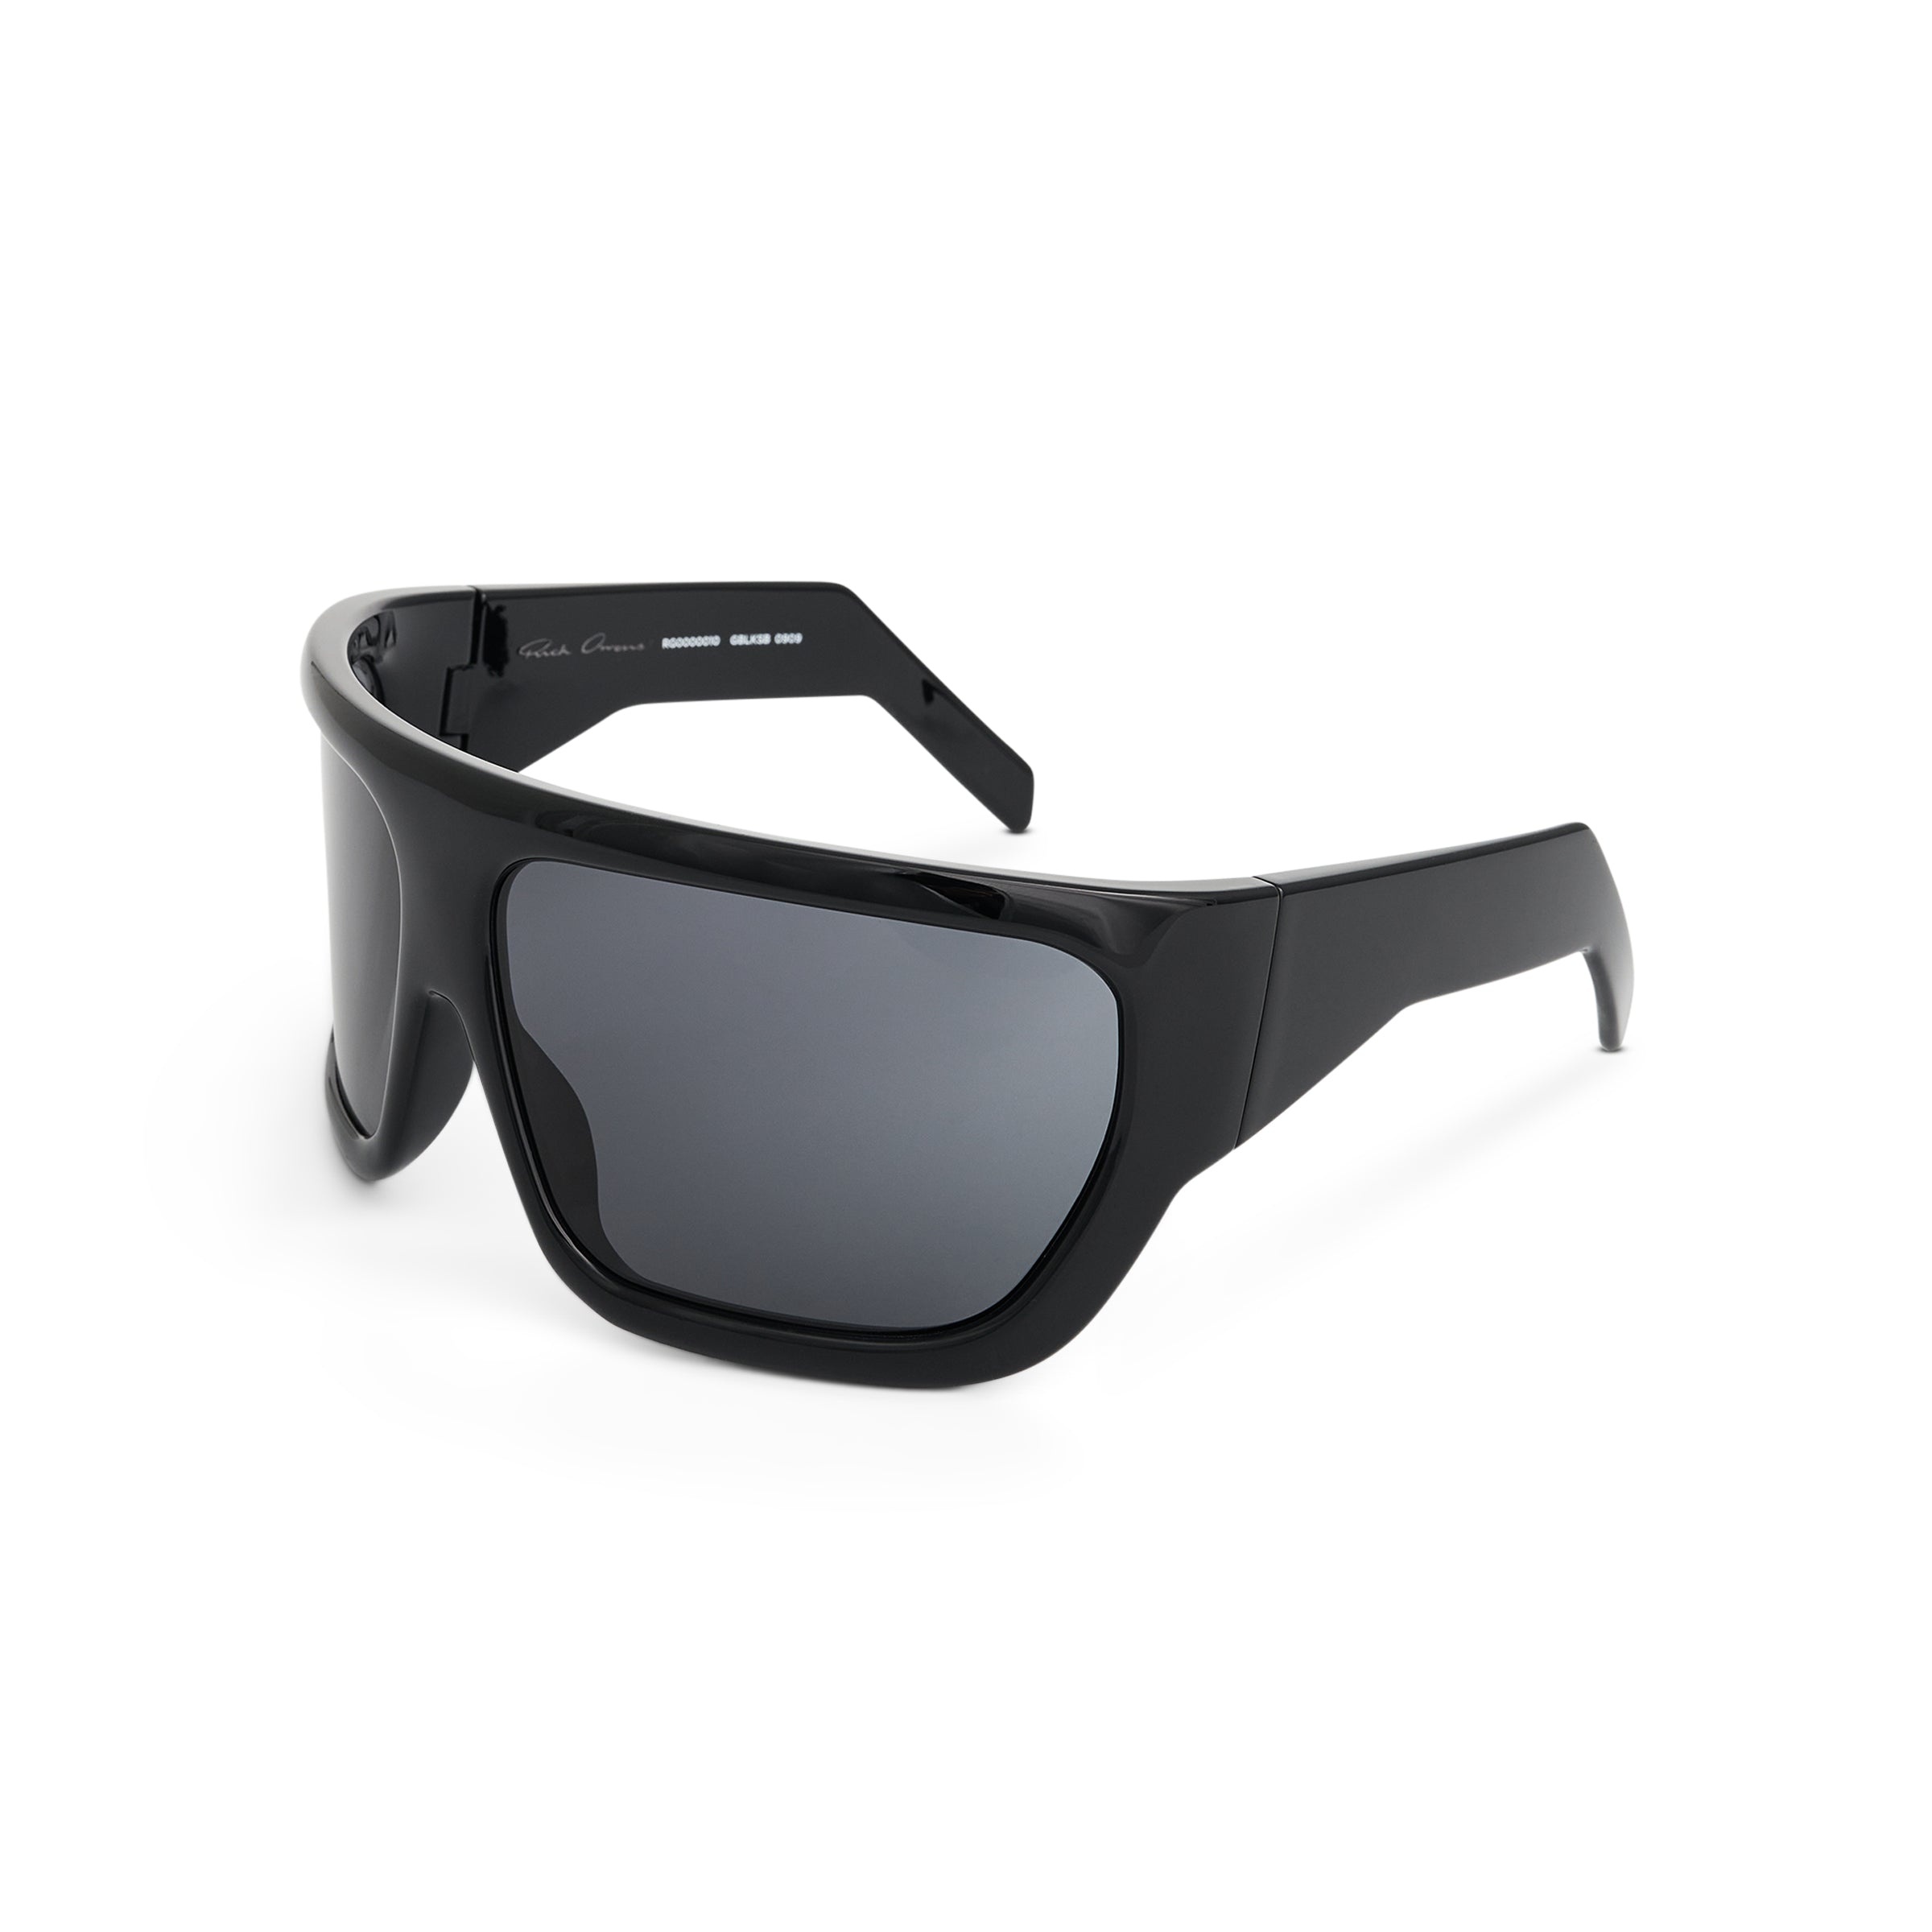 Shiny Davis Sunglasses in Black - 2